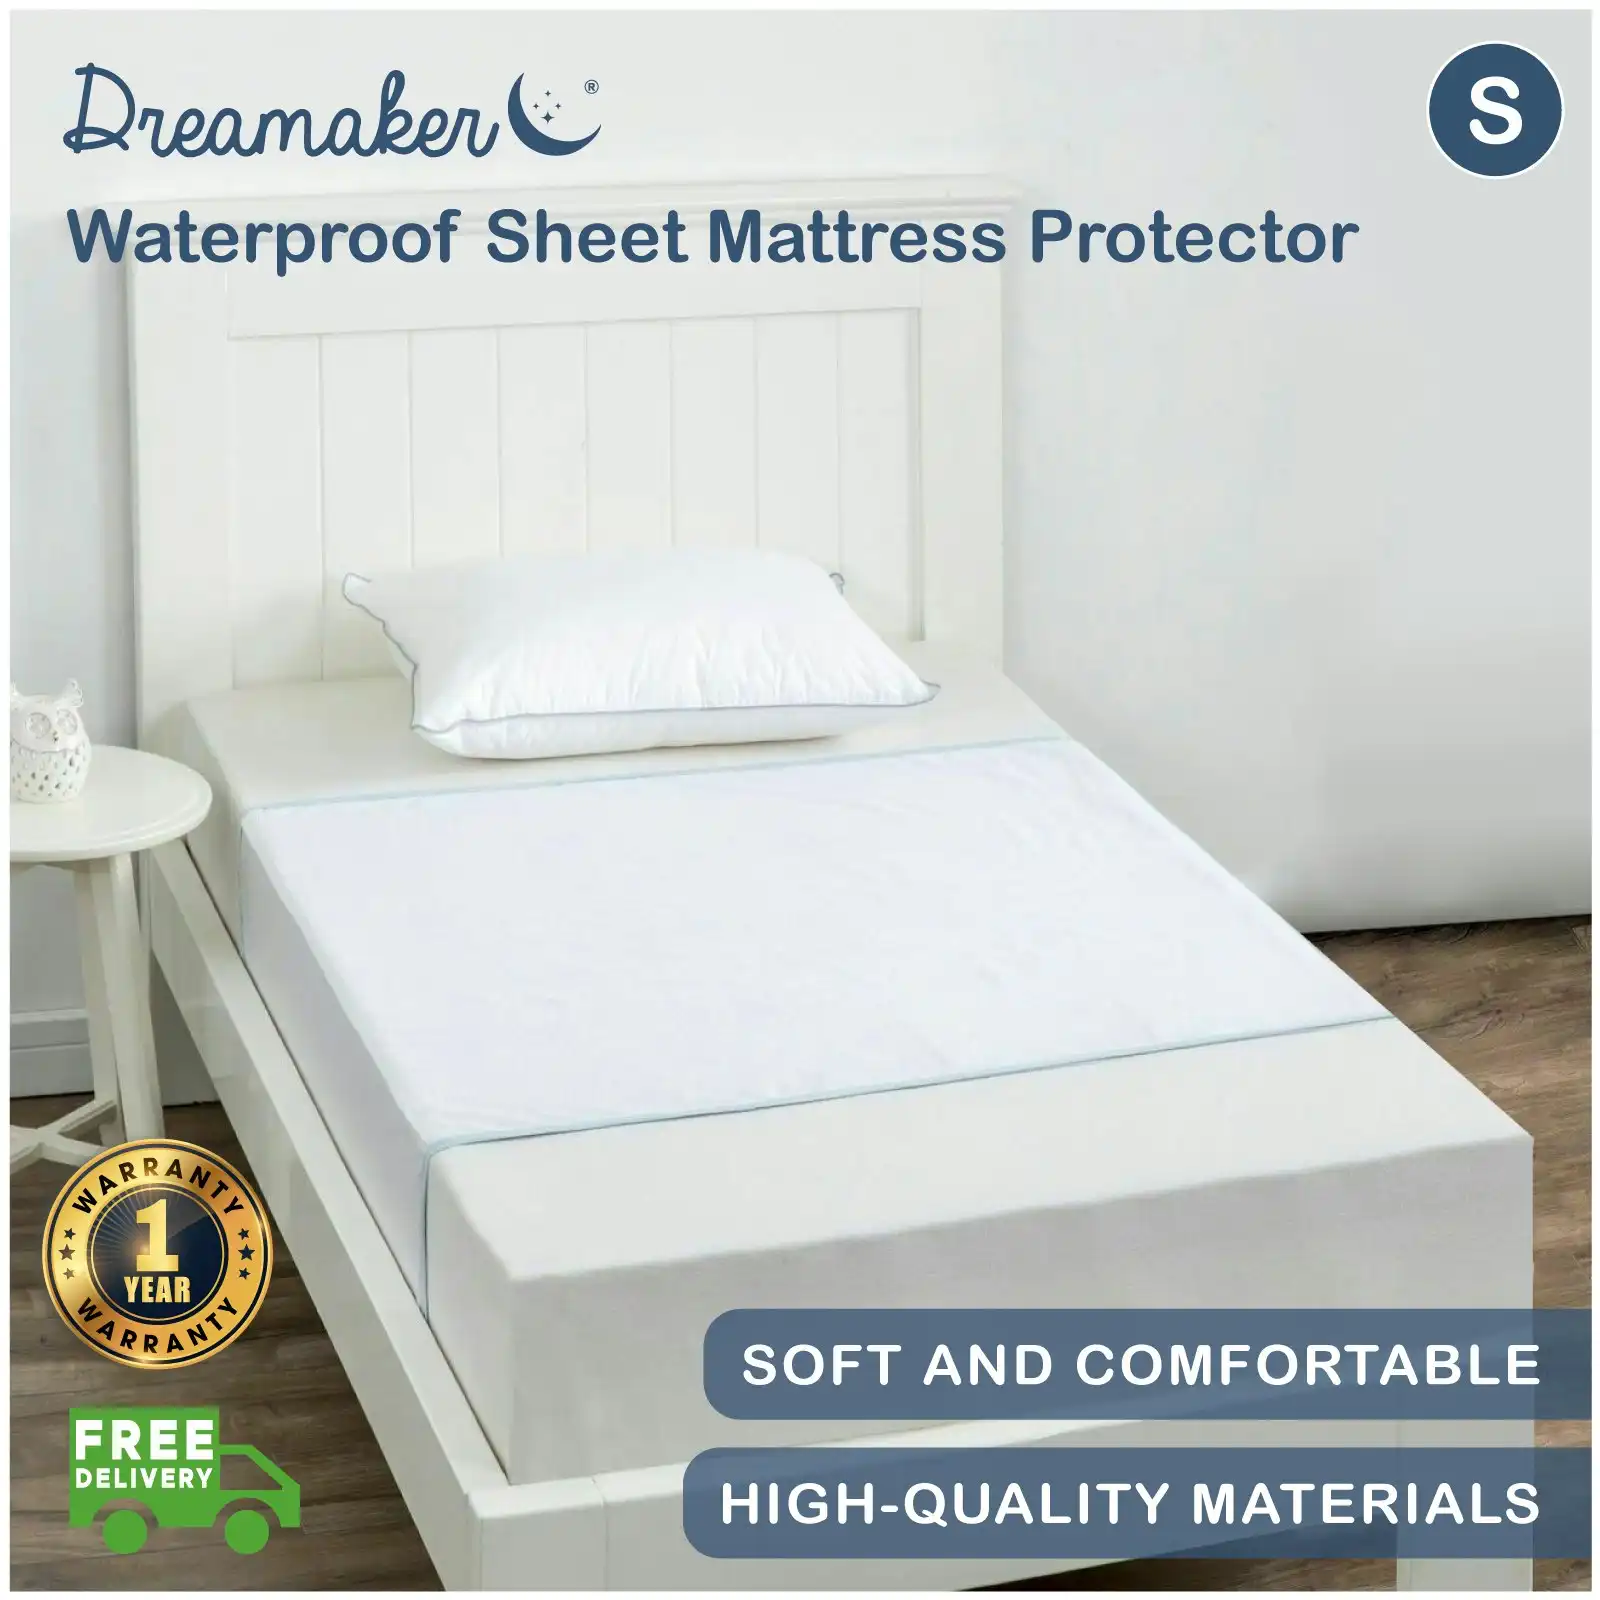 9009246 Dreamaker Waterproof Sheet Mattress Protector - Single Bed